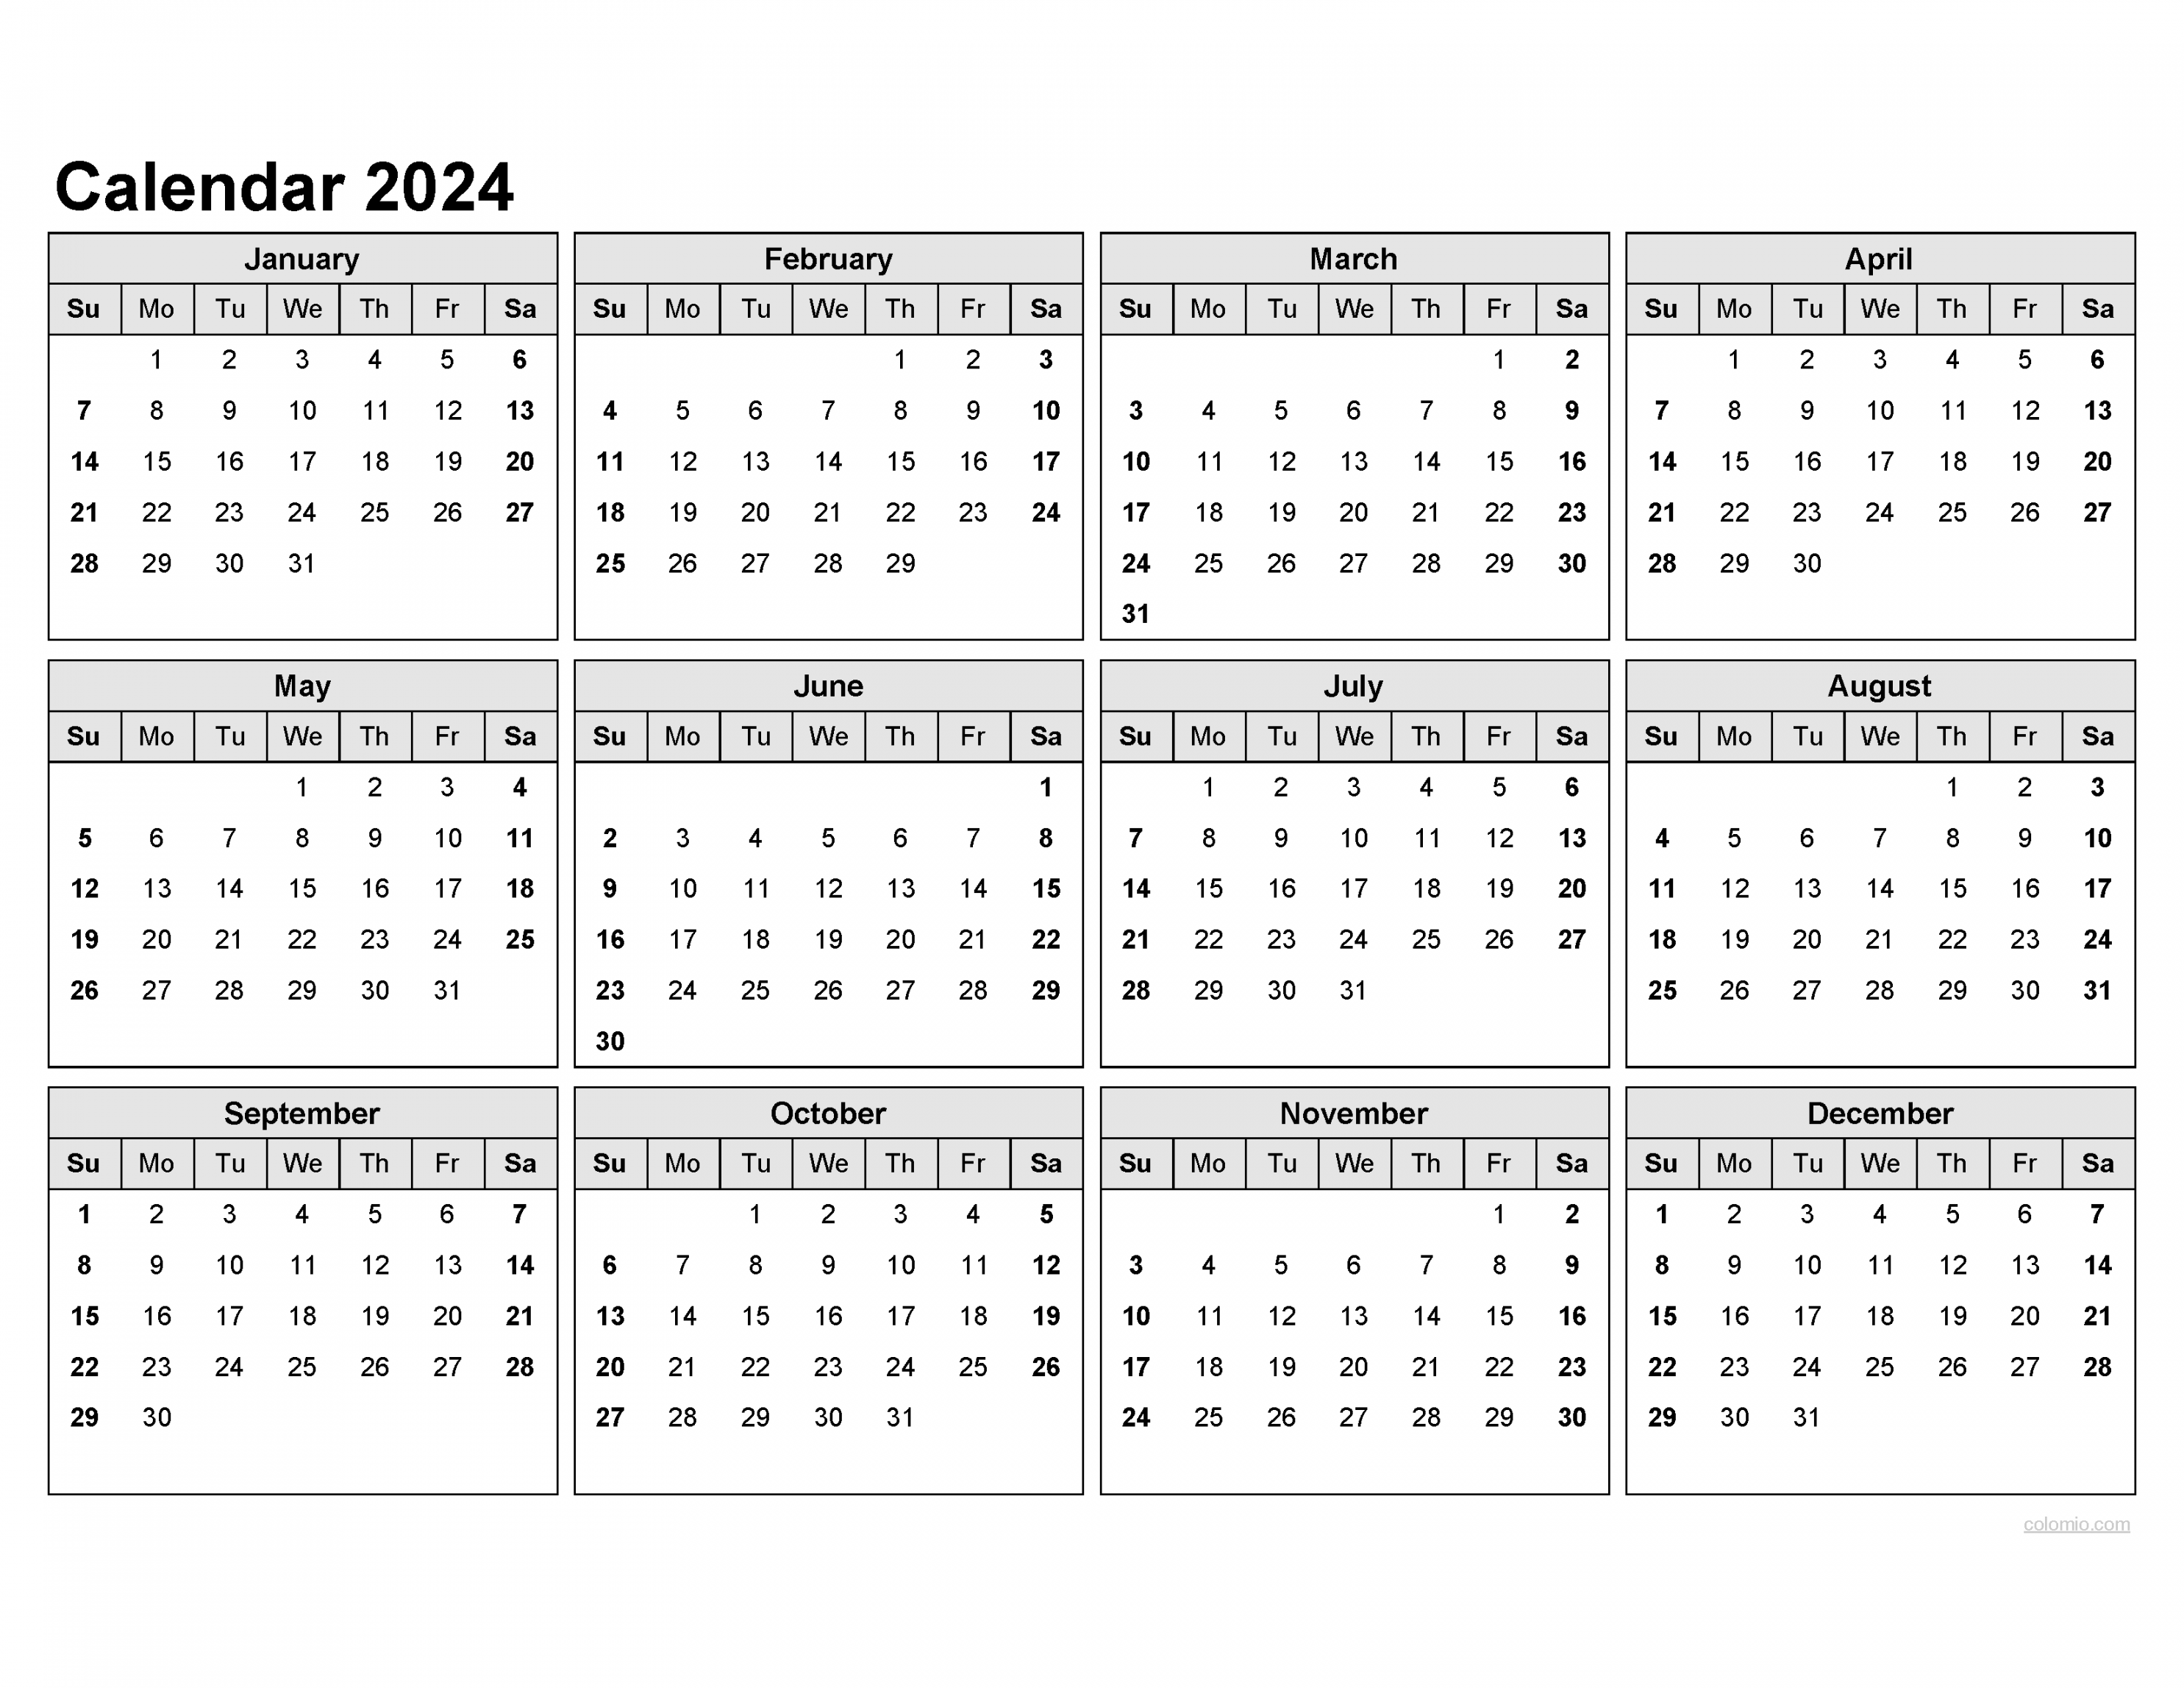 &  Calendar, Monthly Calendars, with Calendar maker